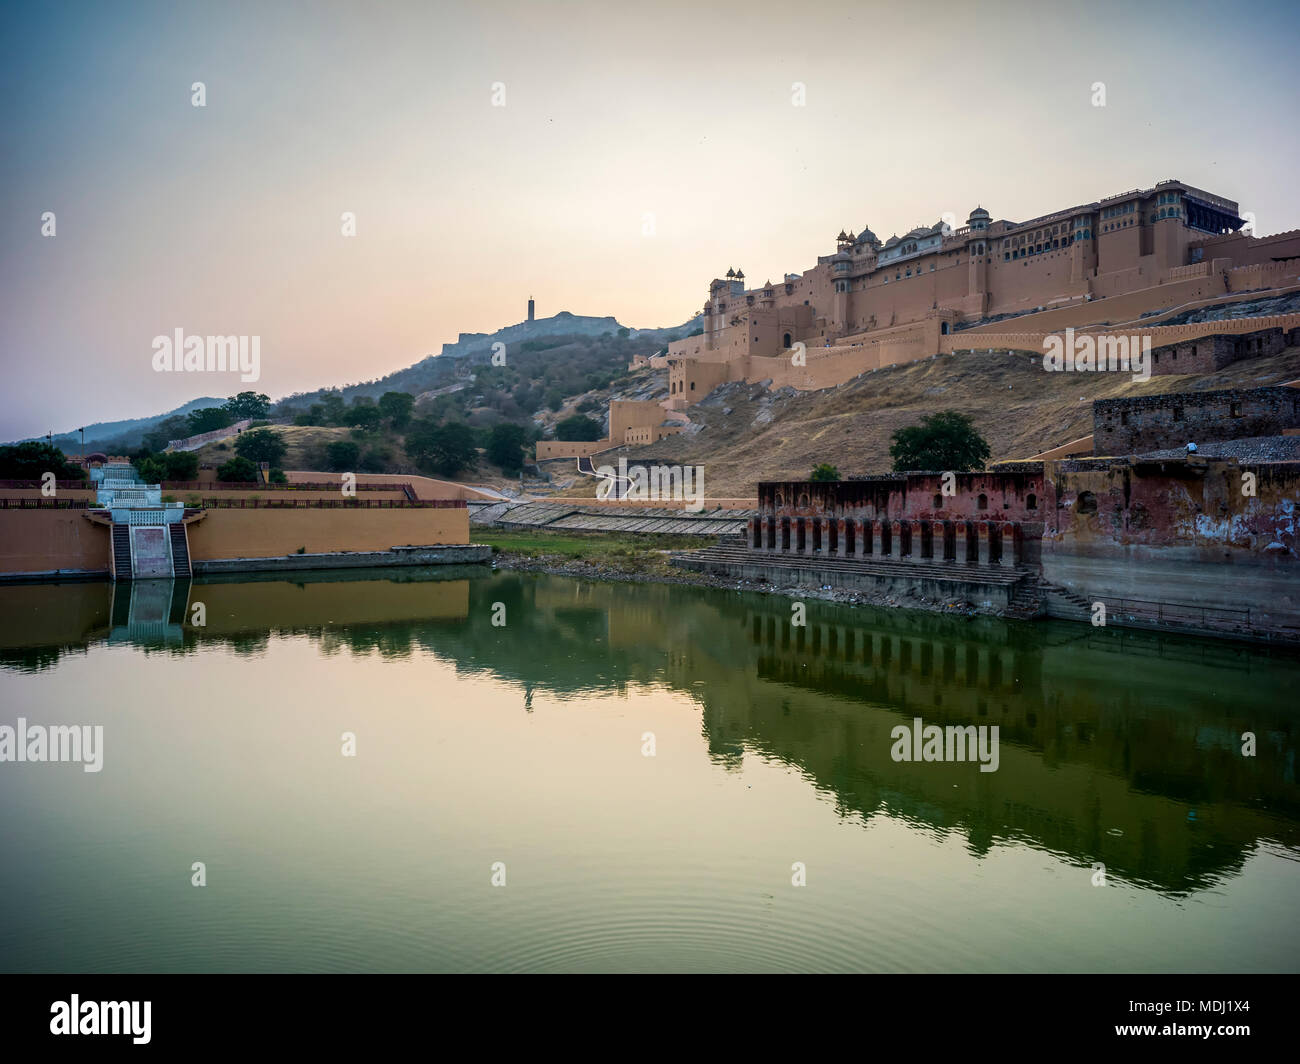 Maota See vor der Amer Fort, Jaipur, Rajasthan, Indien Stockfoto